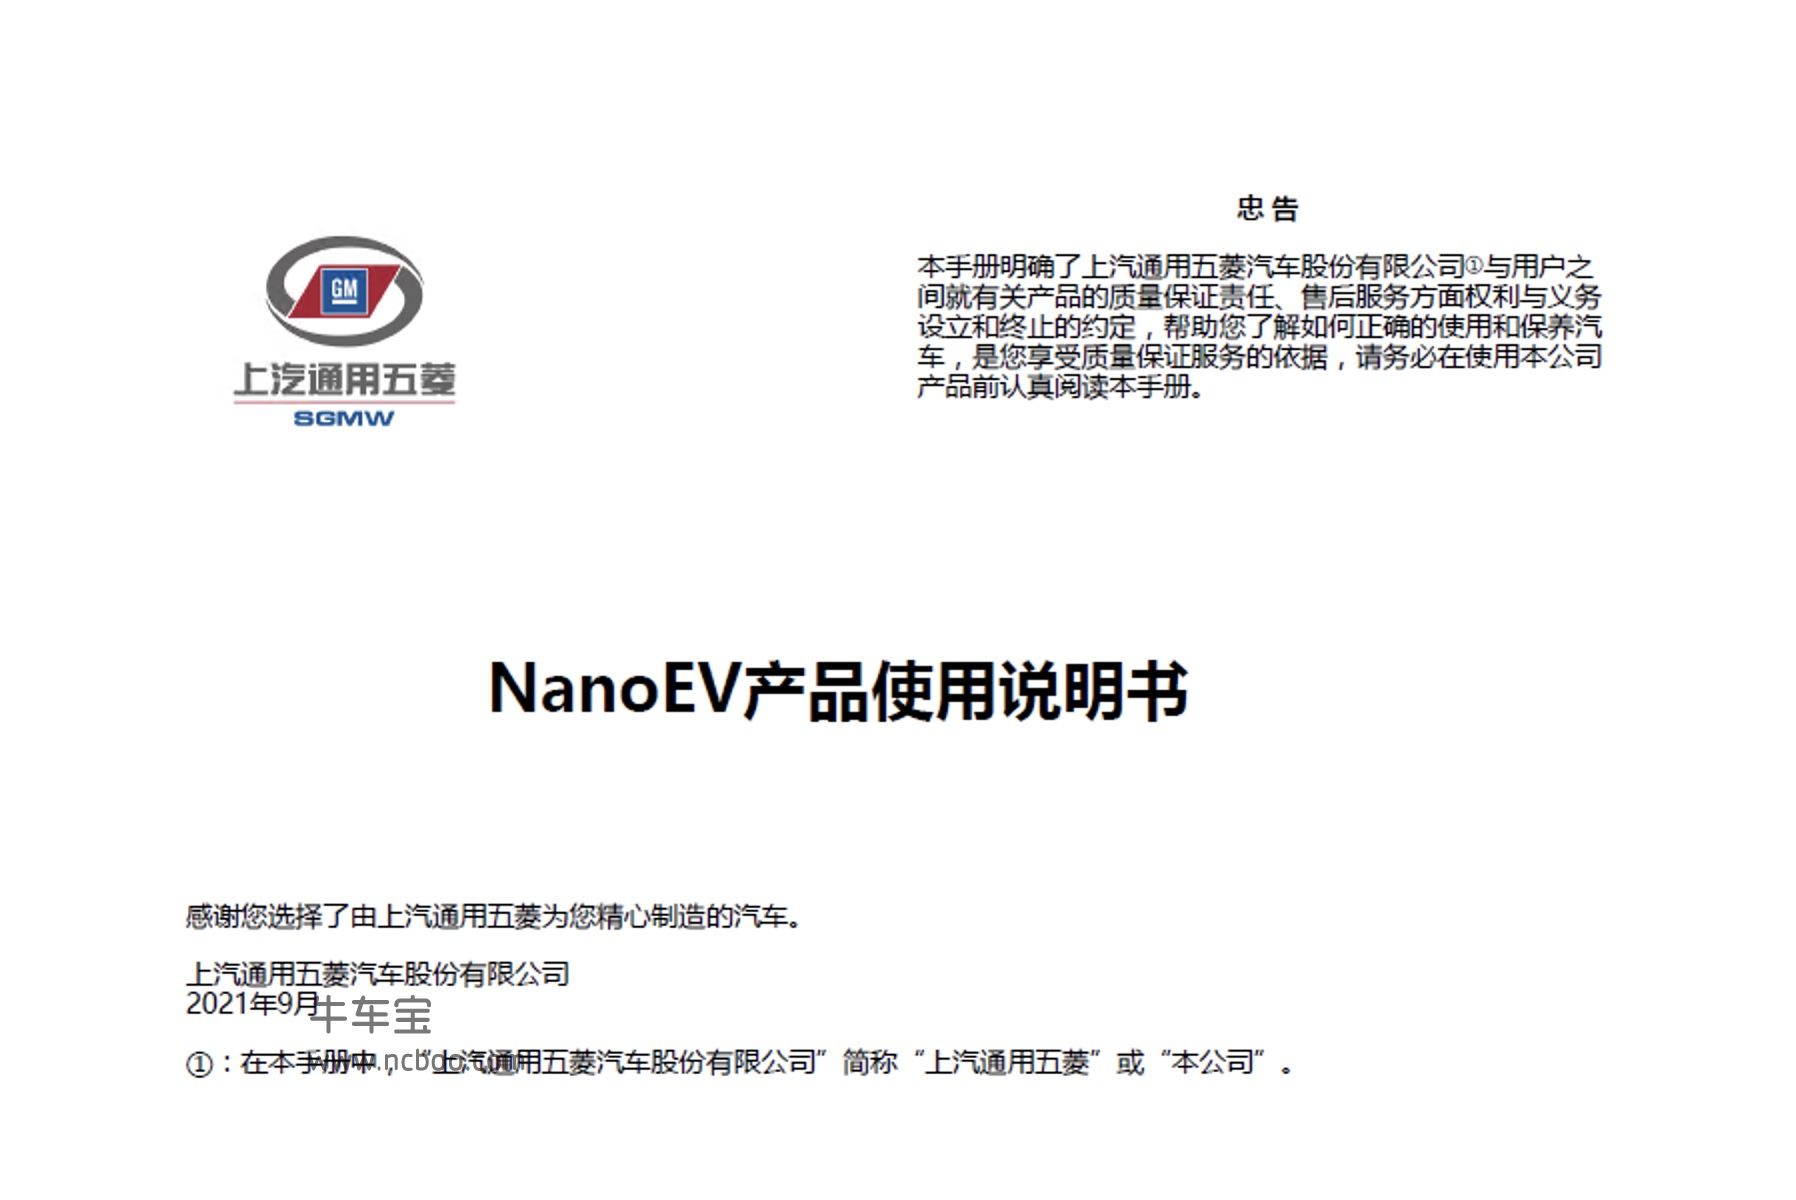 2021款五菱 Nano EV-产品使用说明书电子版下载